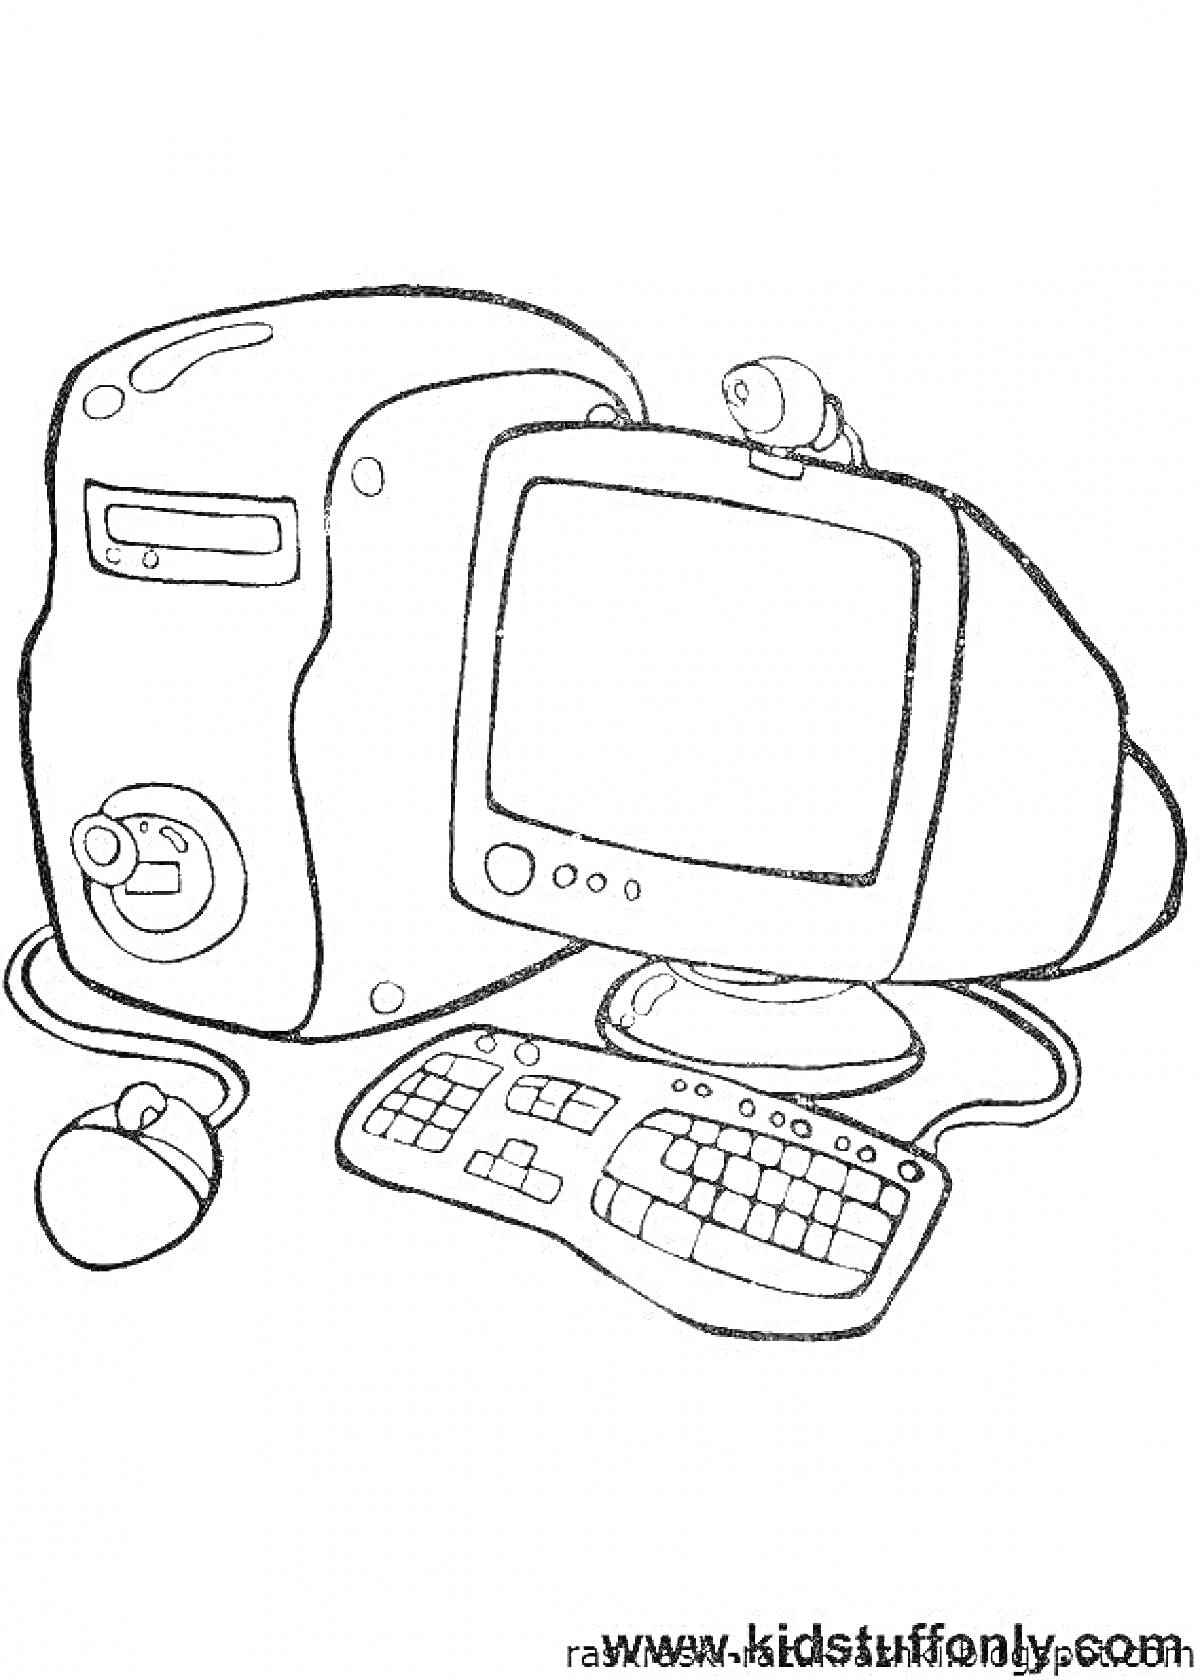 Раскраска Компьютерный набор с монитором, системным блоком, клавиатурой, мышью и веб-камерой